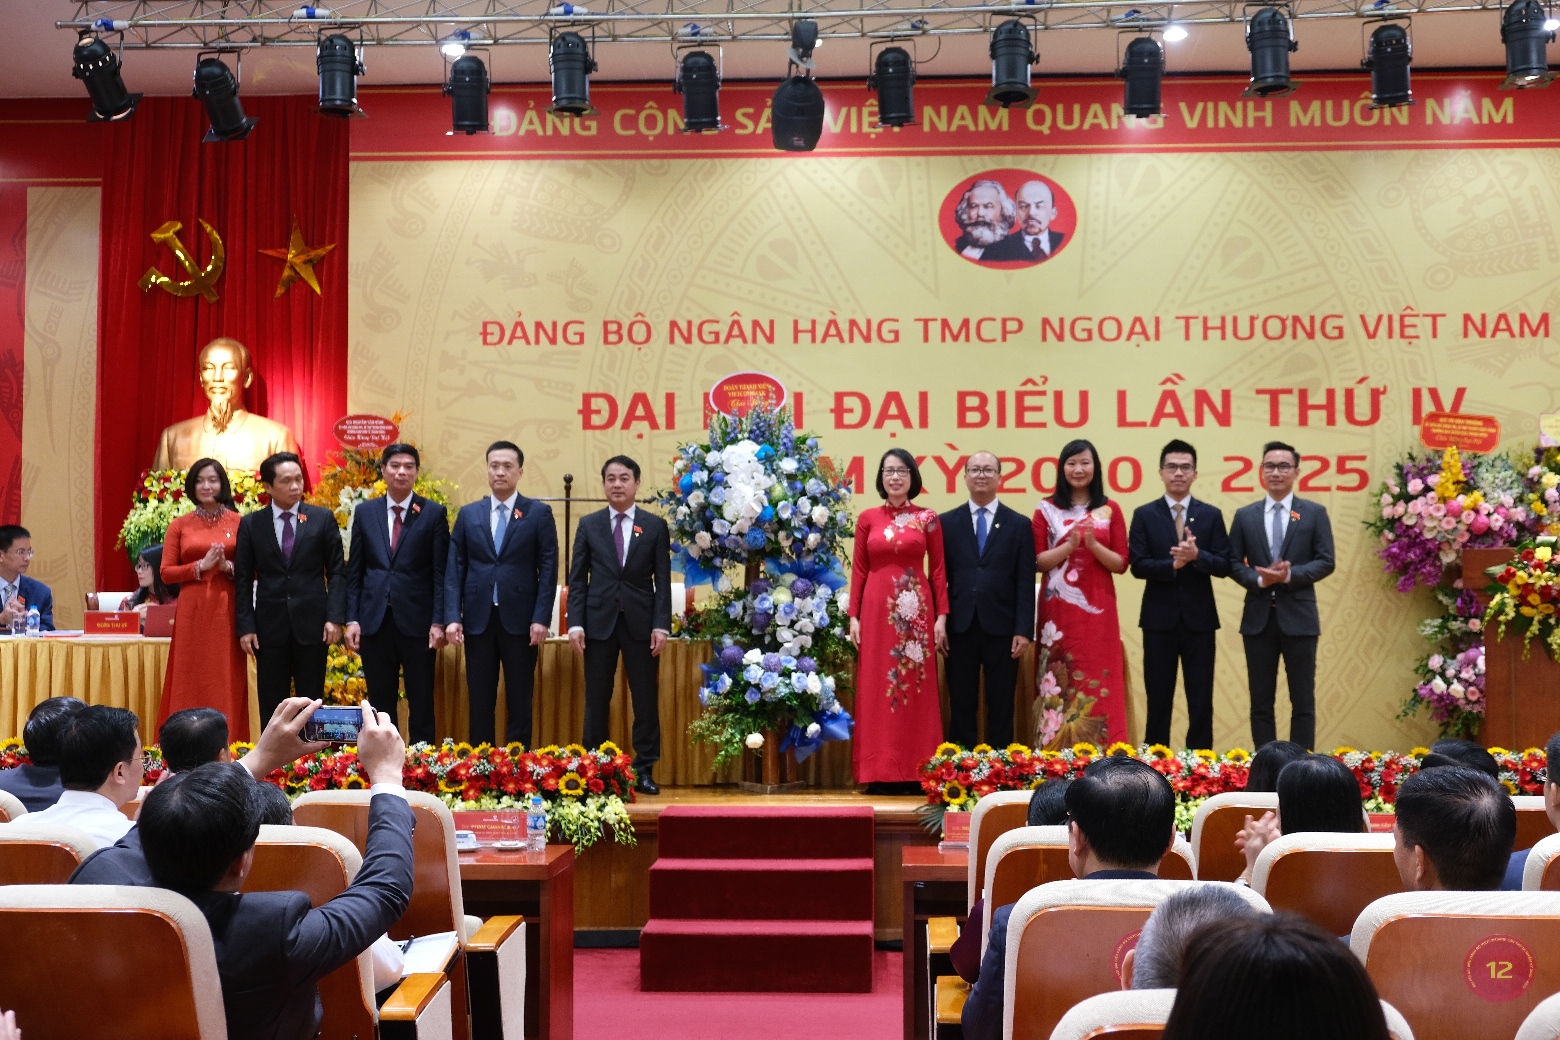 Khai mạc Đại hội đại biểu Đảng bộ Vietcombank lần thứ IV, nhiệm kỳ 2020 – 2025